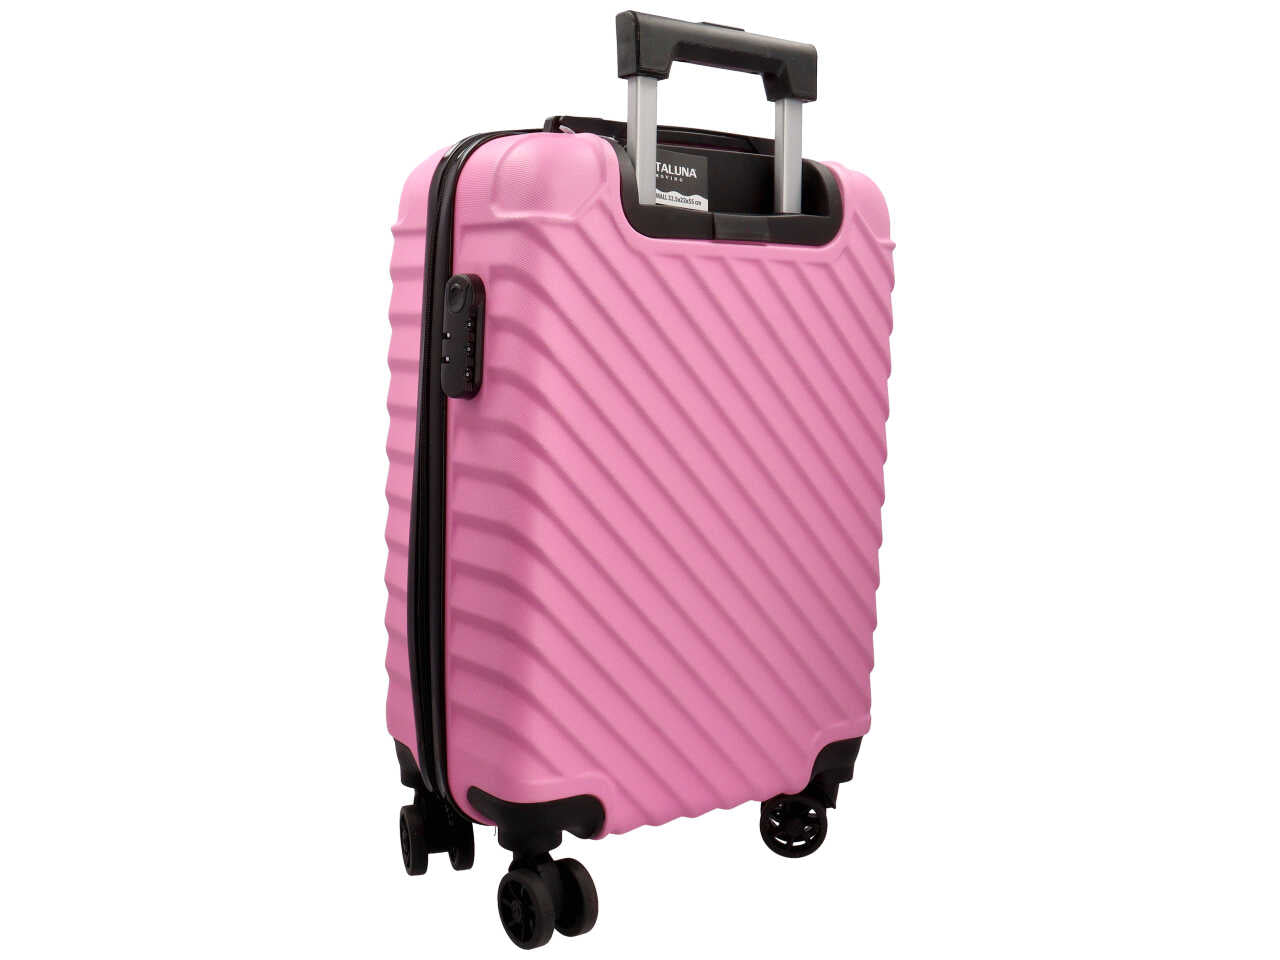 Trolley modello naxos colore rosa misura 33,5x22x55cm in abs con 4 doppie ruote, sacca a rete, elastico ferma indumenti e chiusura con ganci